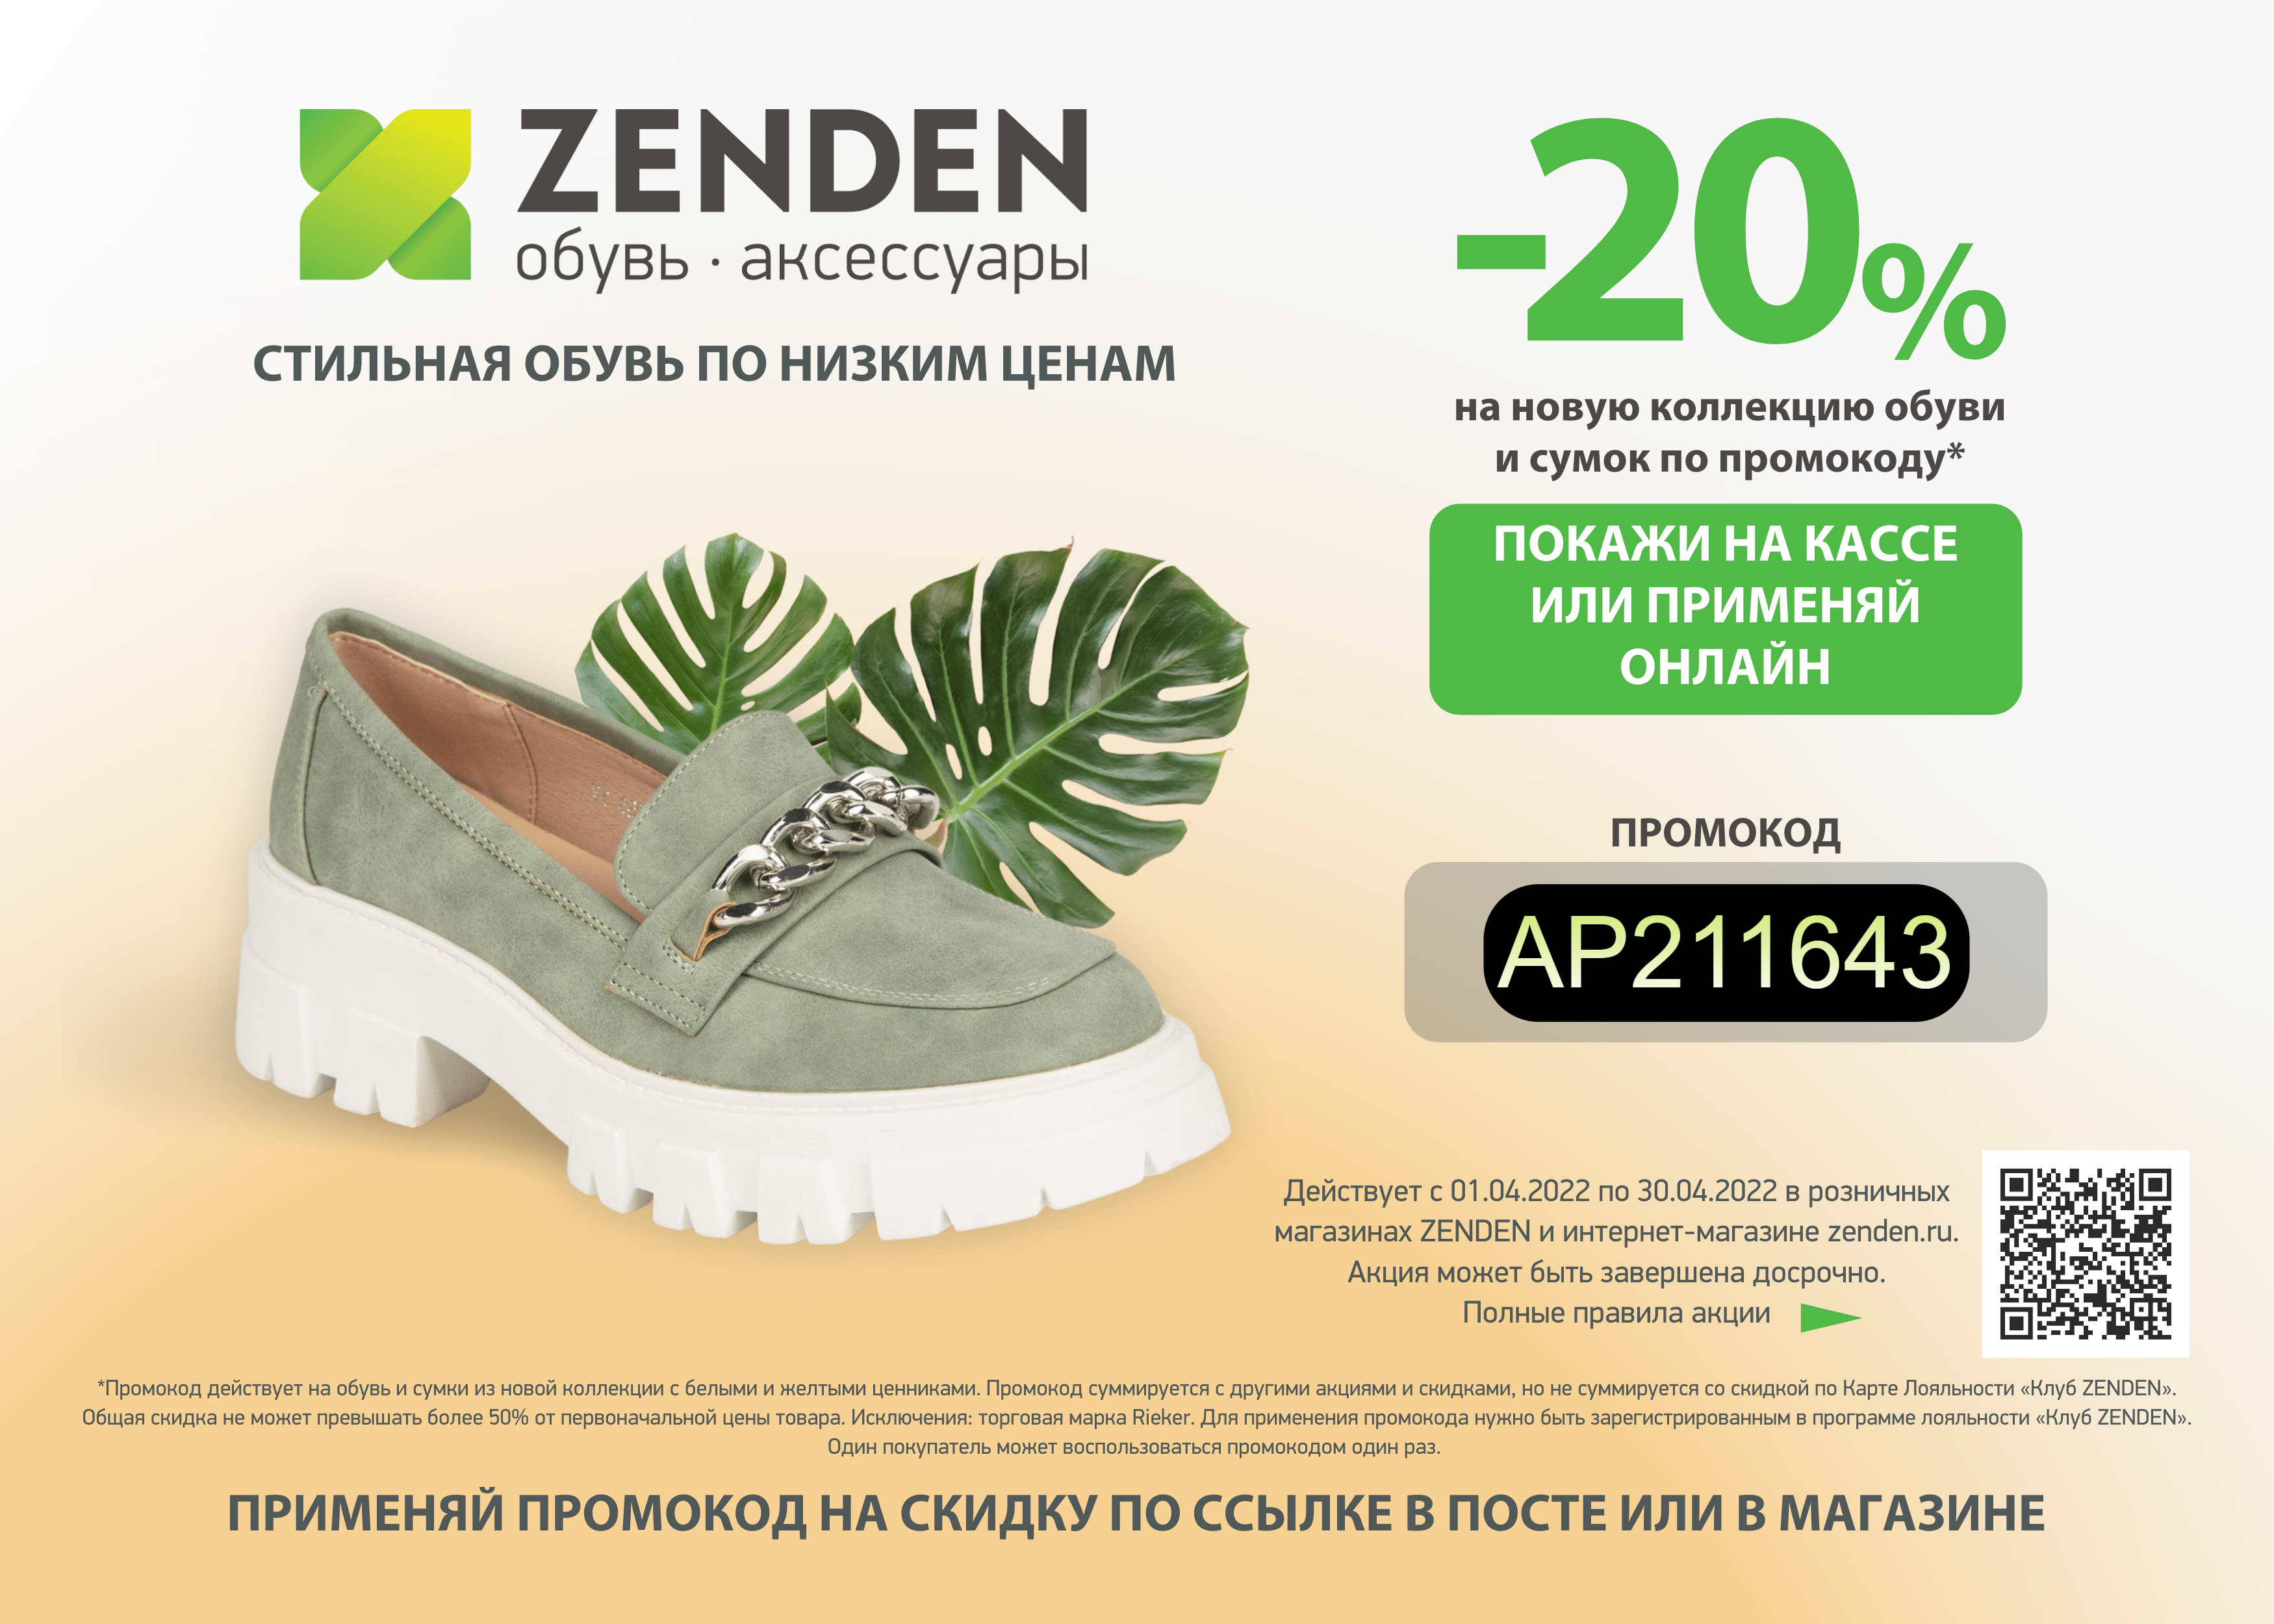 Зенден каталог обуви брянск цены